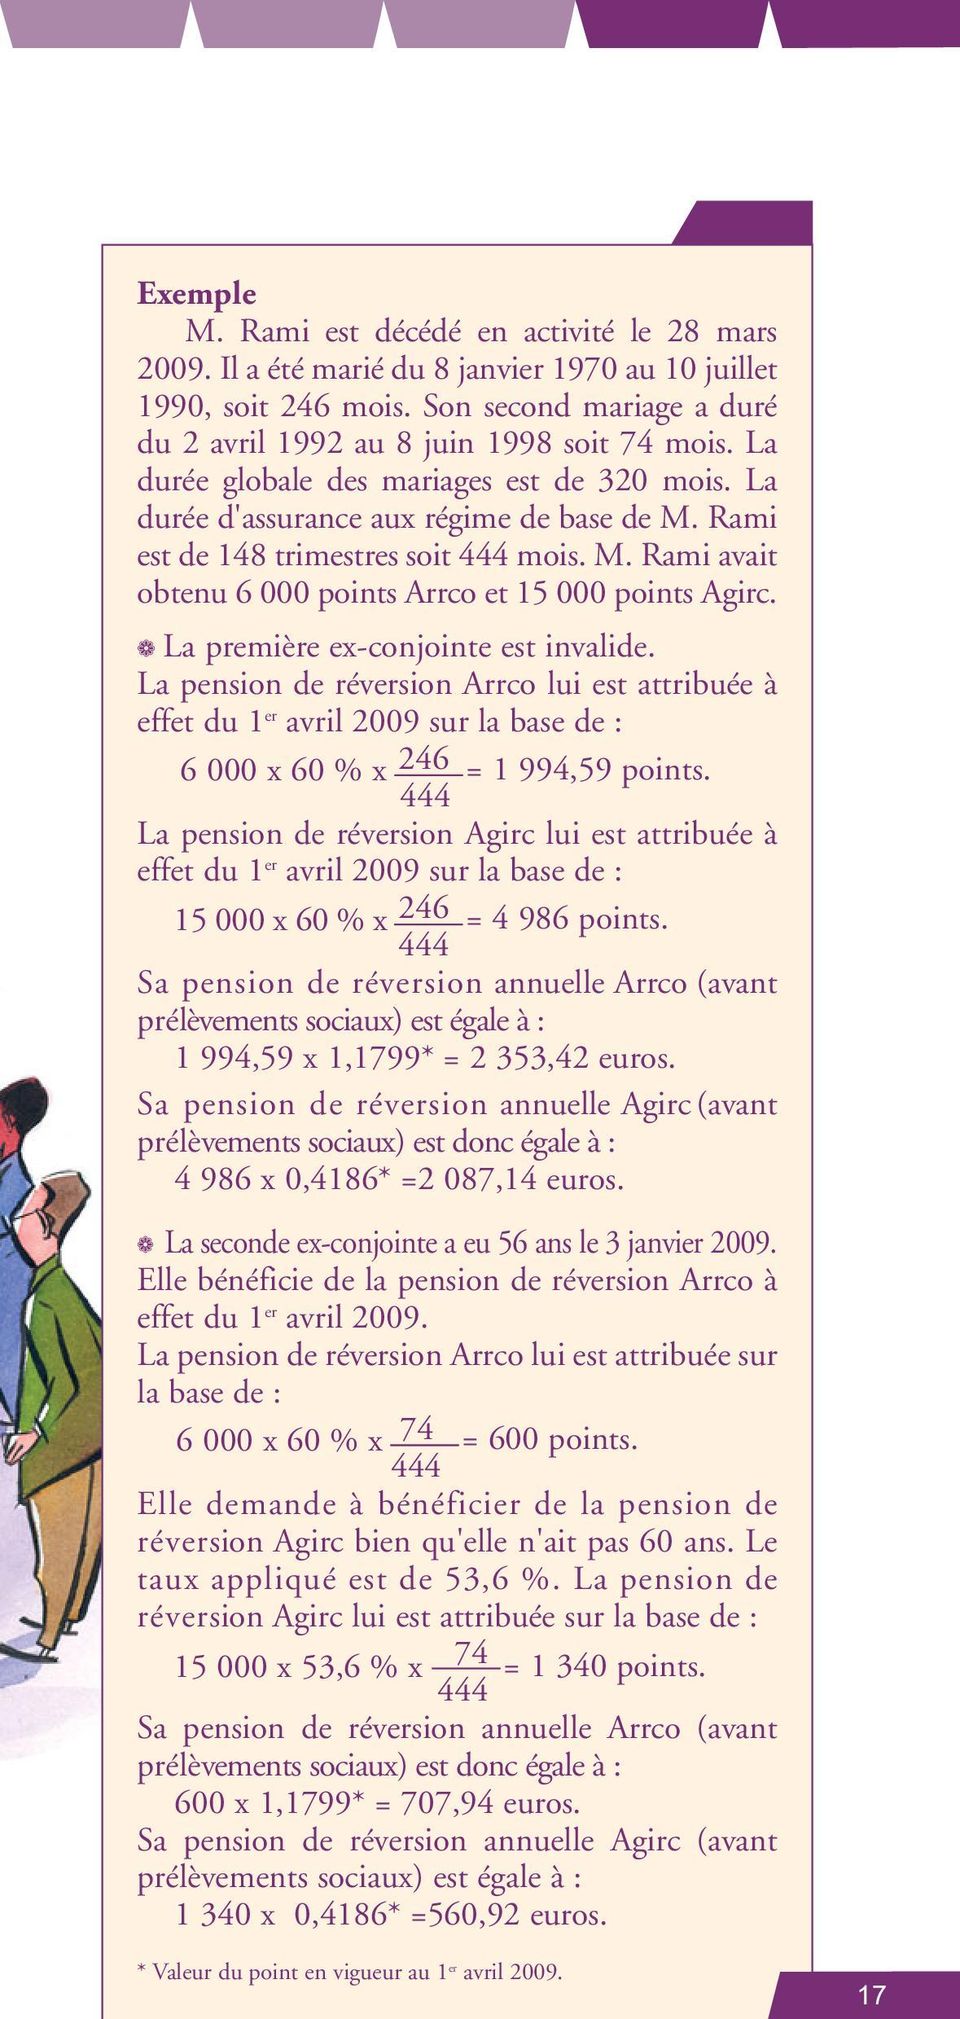 La première ex-conjointe est invalide. La pension de réversion Arrco lui est attribuée à effet du 1 er avril 2009 sur la base de : 6 000 x 60 % x 246 = 1 994,59 points.